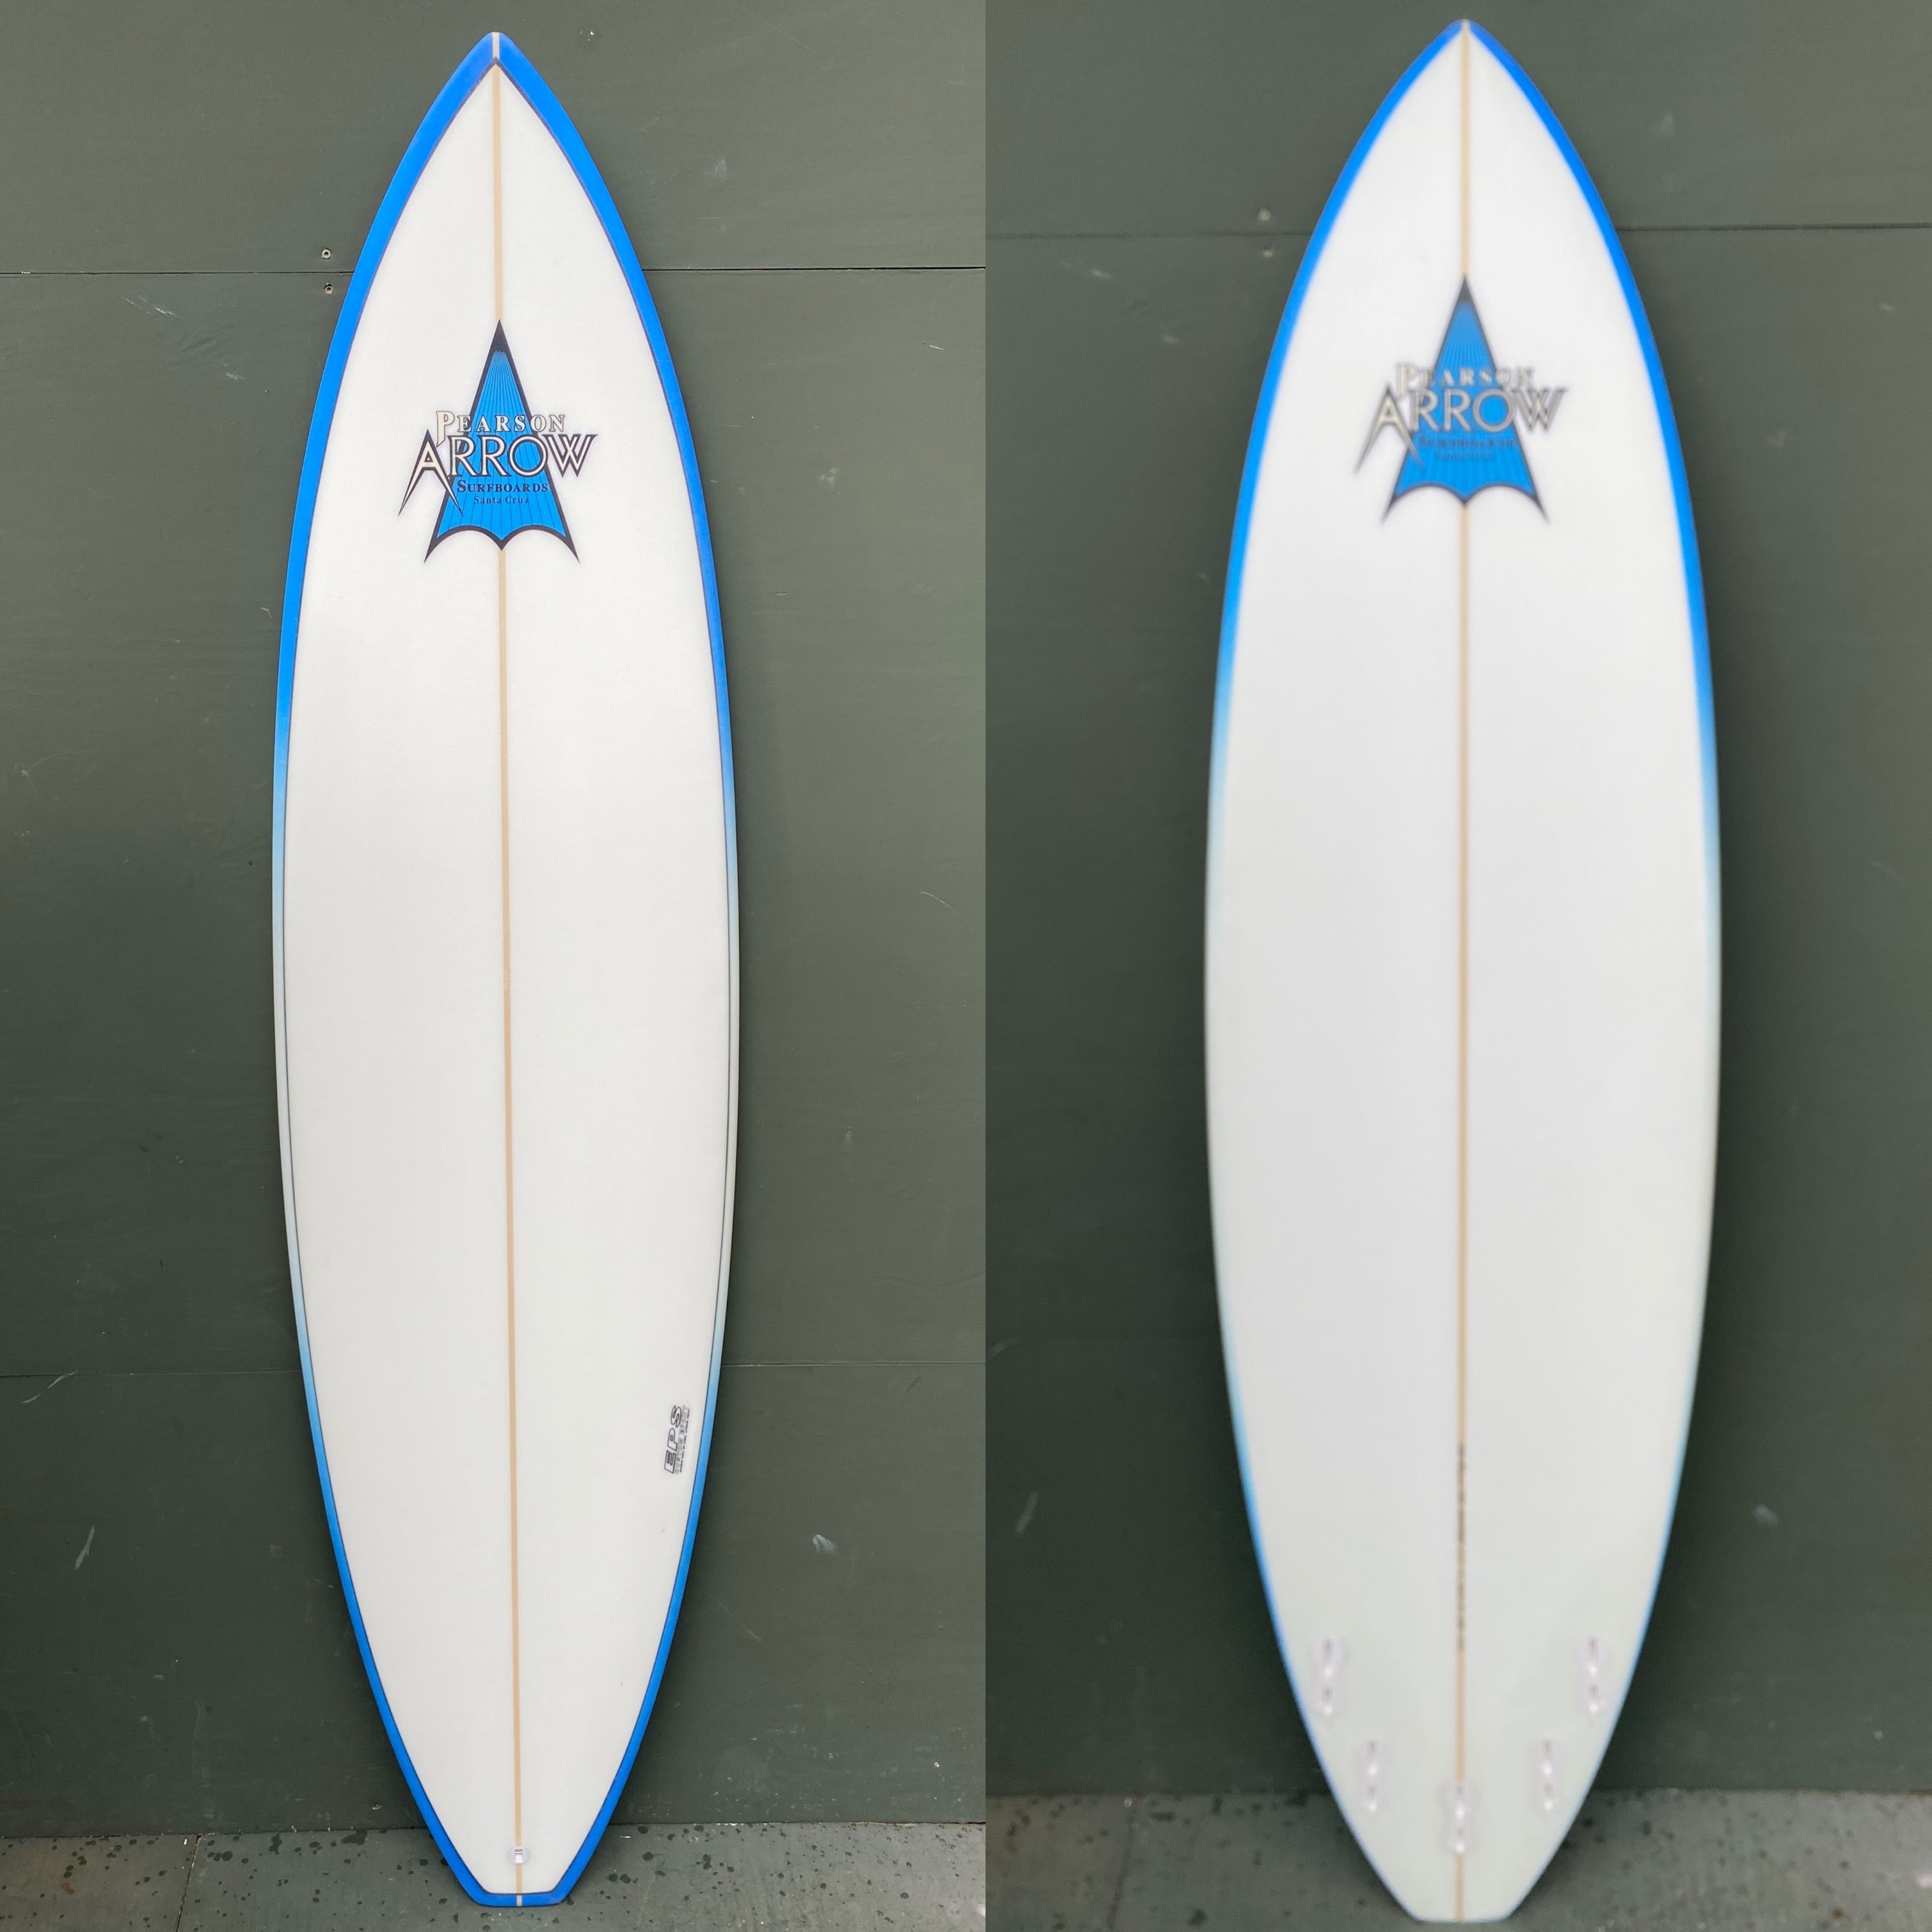 Pearson Arrow Surfboards - 6'10" Hybrid Surfboard - EPS - Seaside Surf Shop 